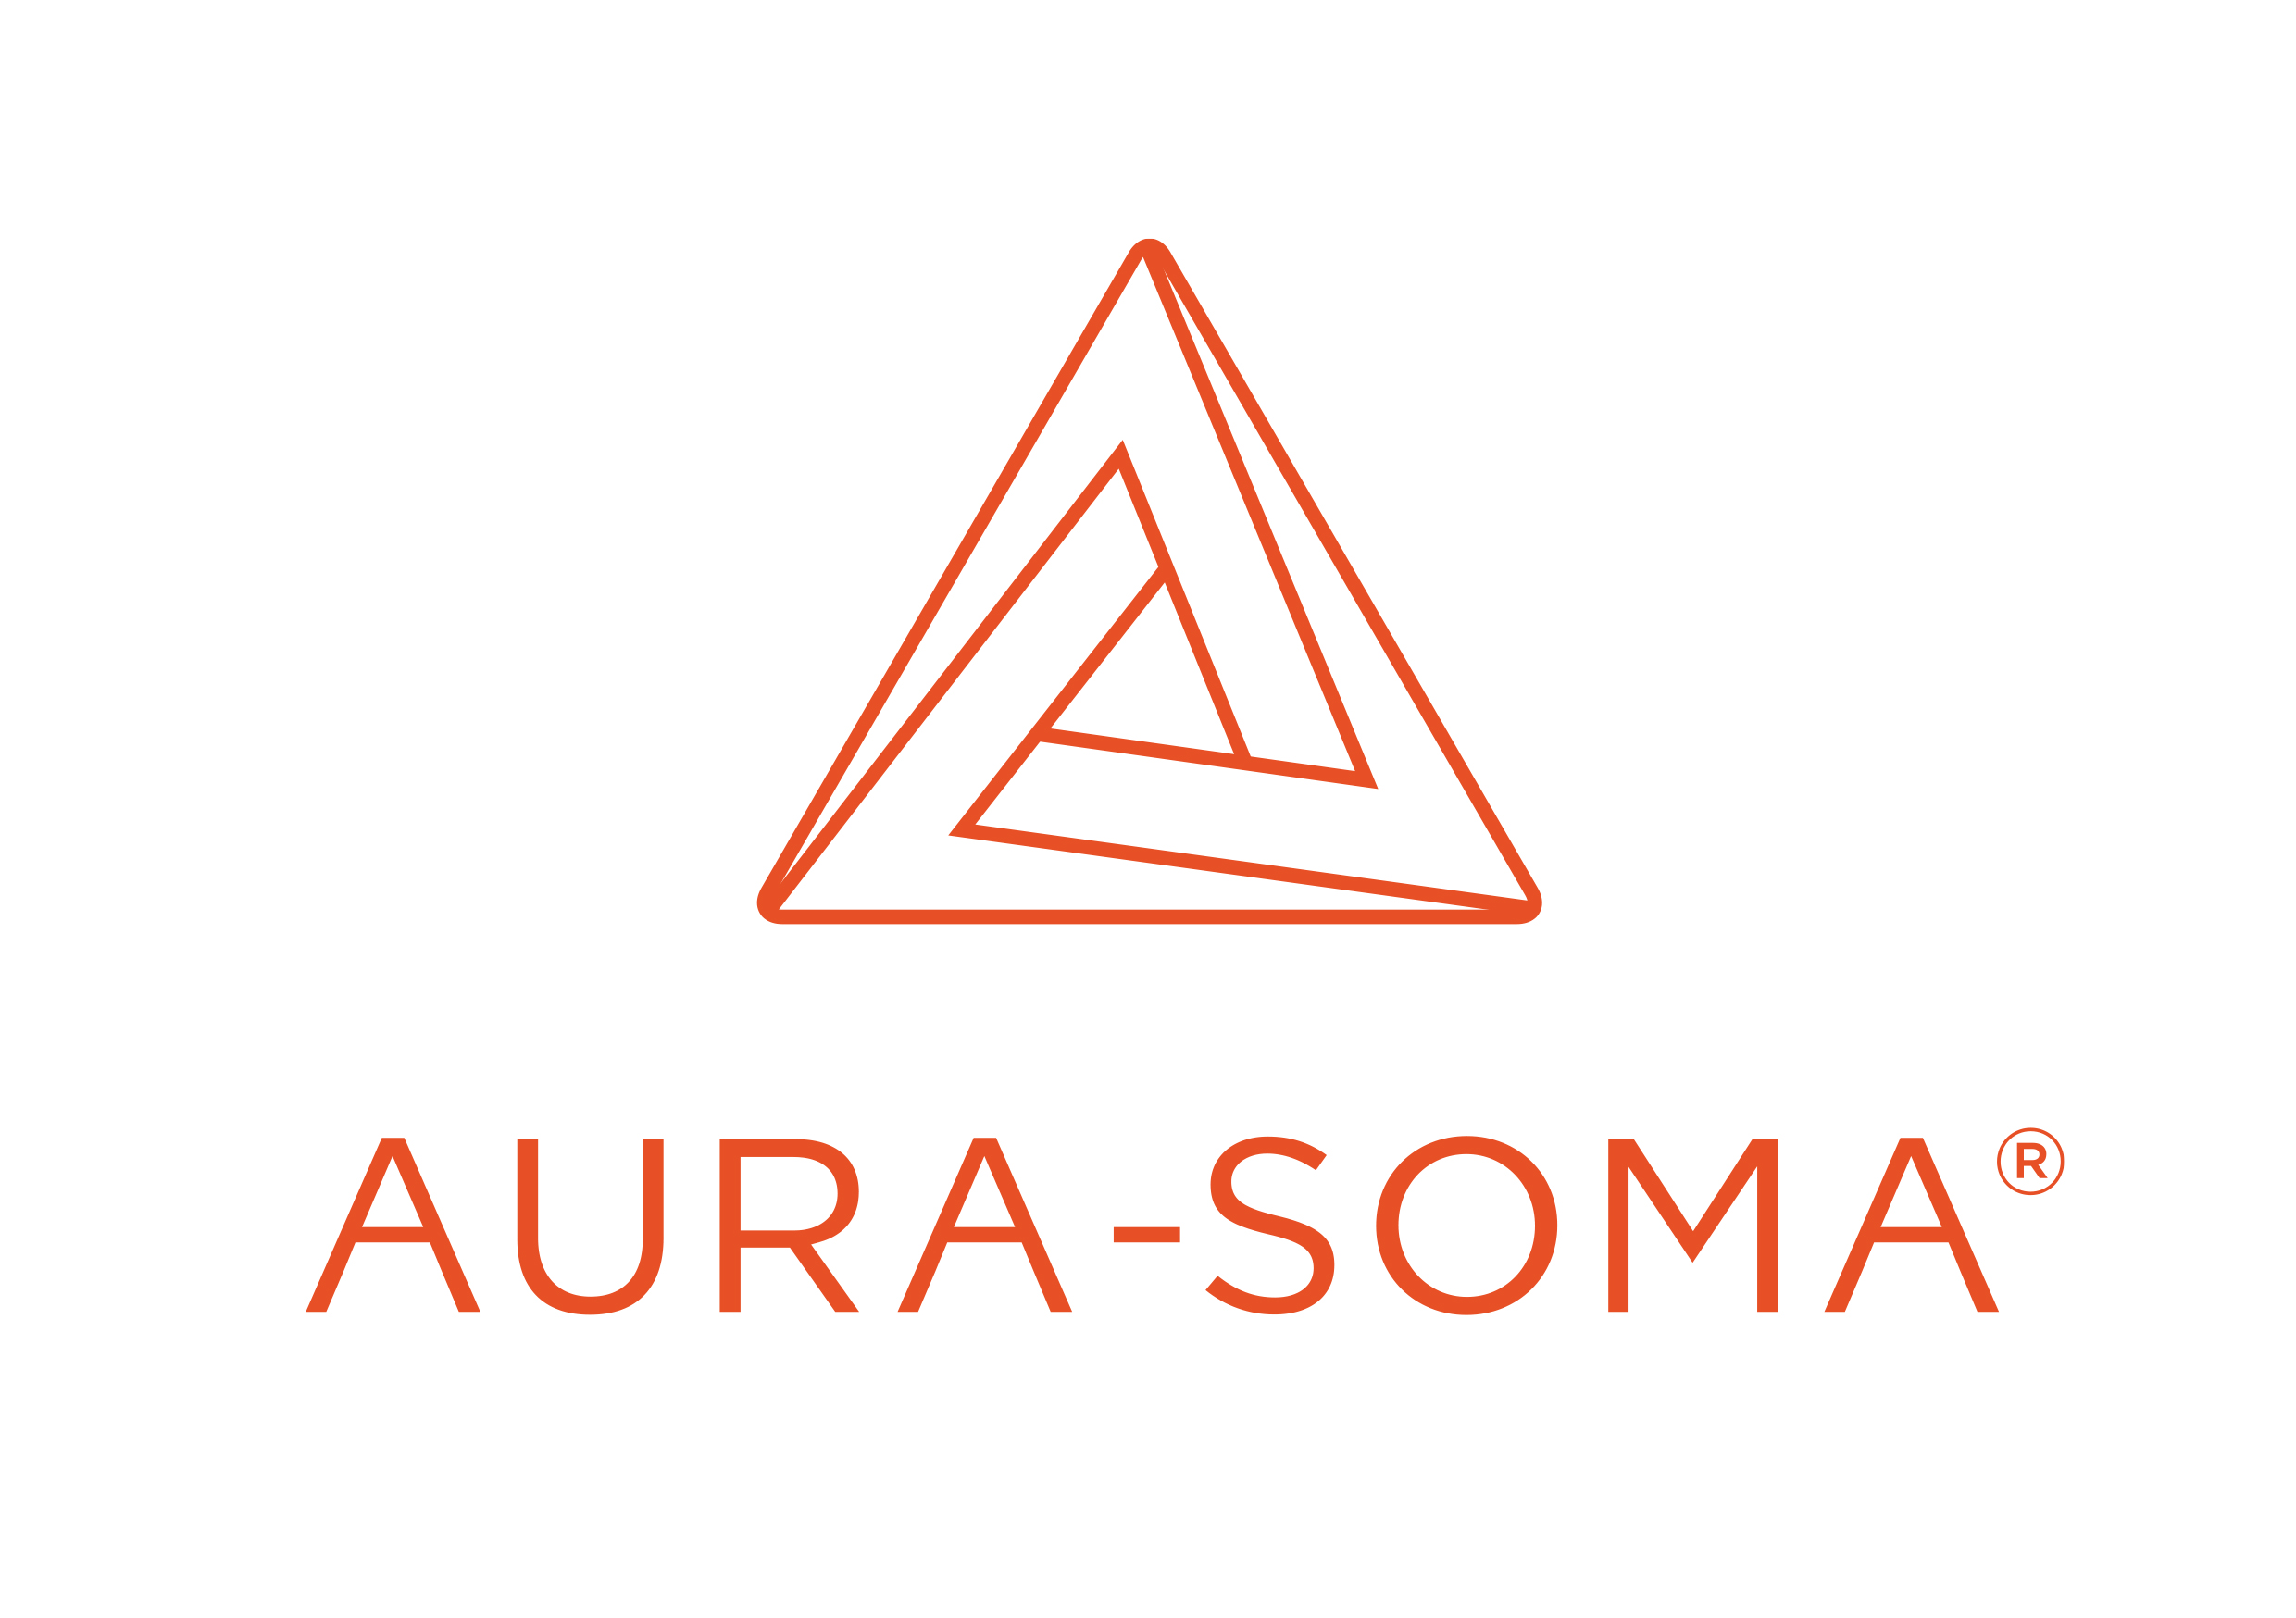 logo-aura-soma